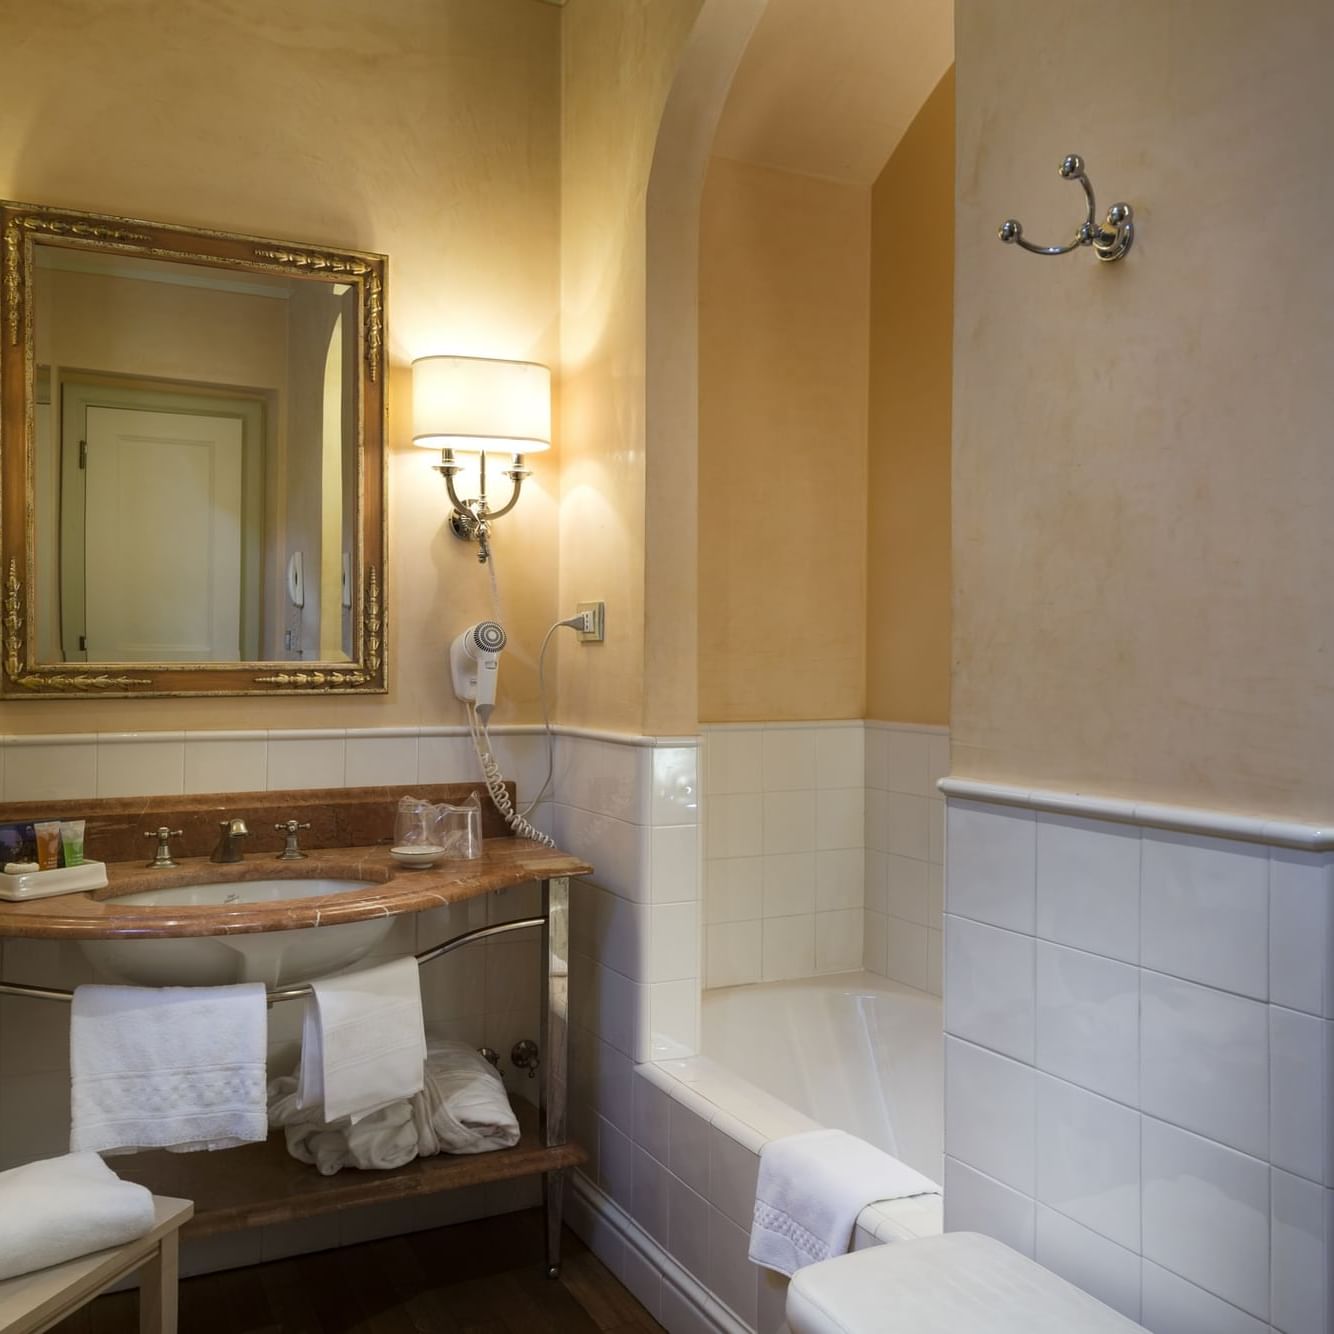 Hotel 4* in storica villa a Perugia